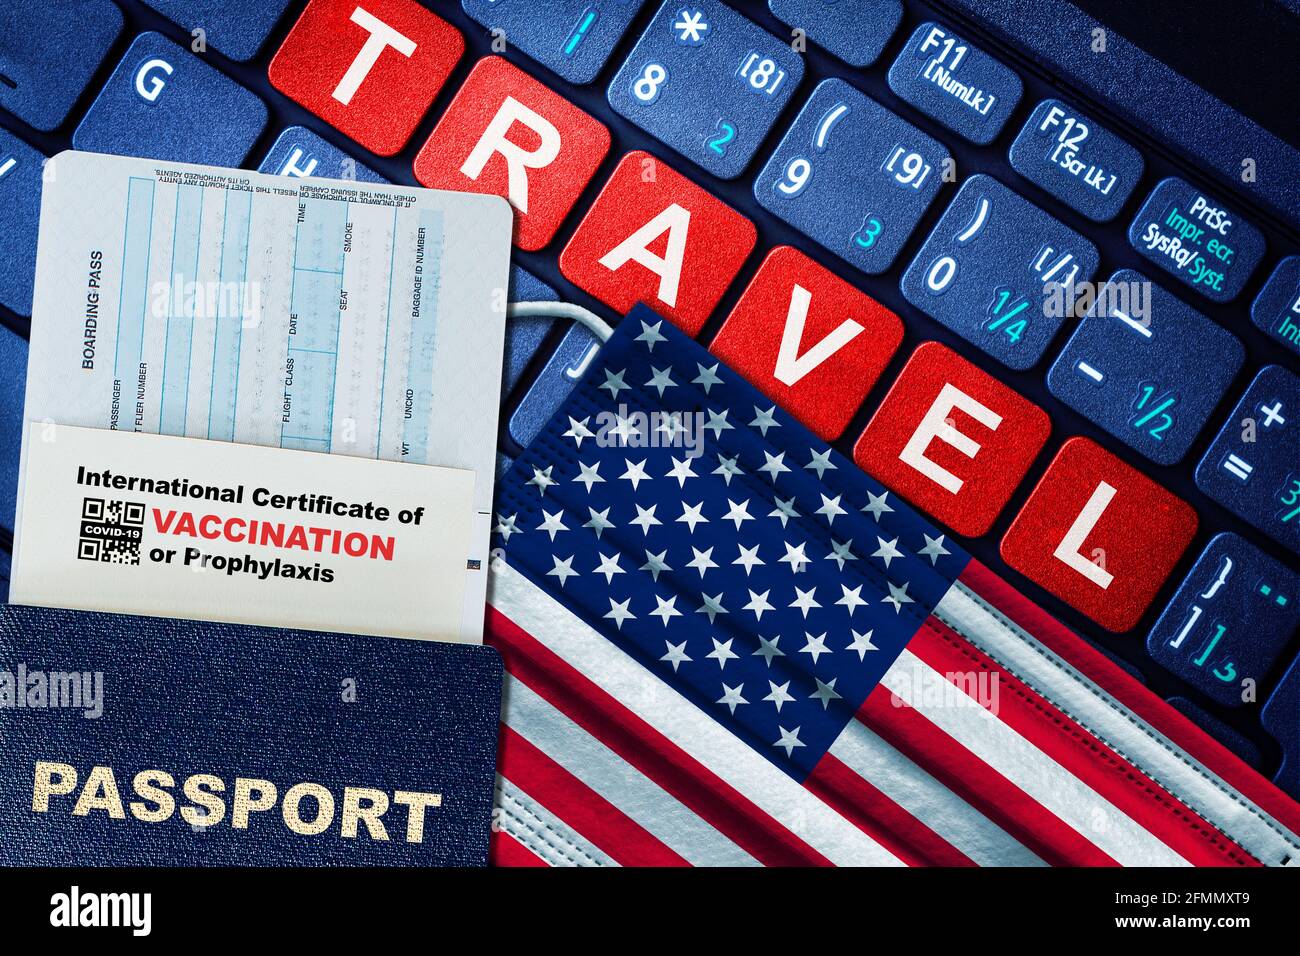 NOUVEAU concept DE voyage normal AUX ÉTATS-UNIS avec passeport, carte d'embarquement, masque facial avec drapeau américain et certificat de vaccination COVID-19 sur clavier. Pastir de vaccin Banque D'Images